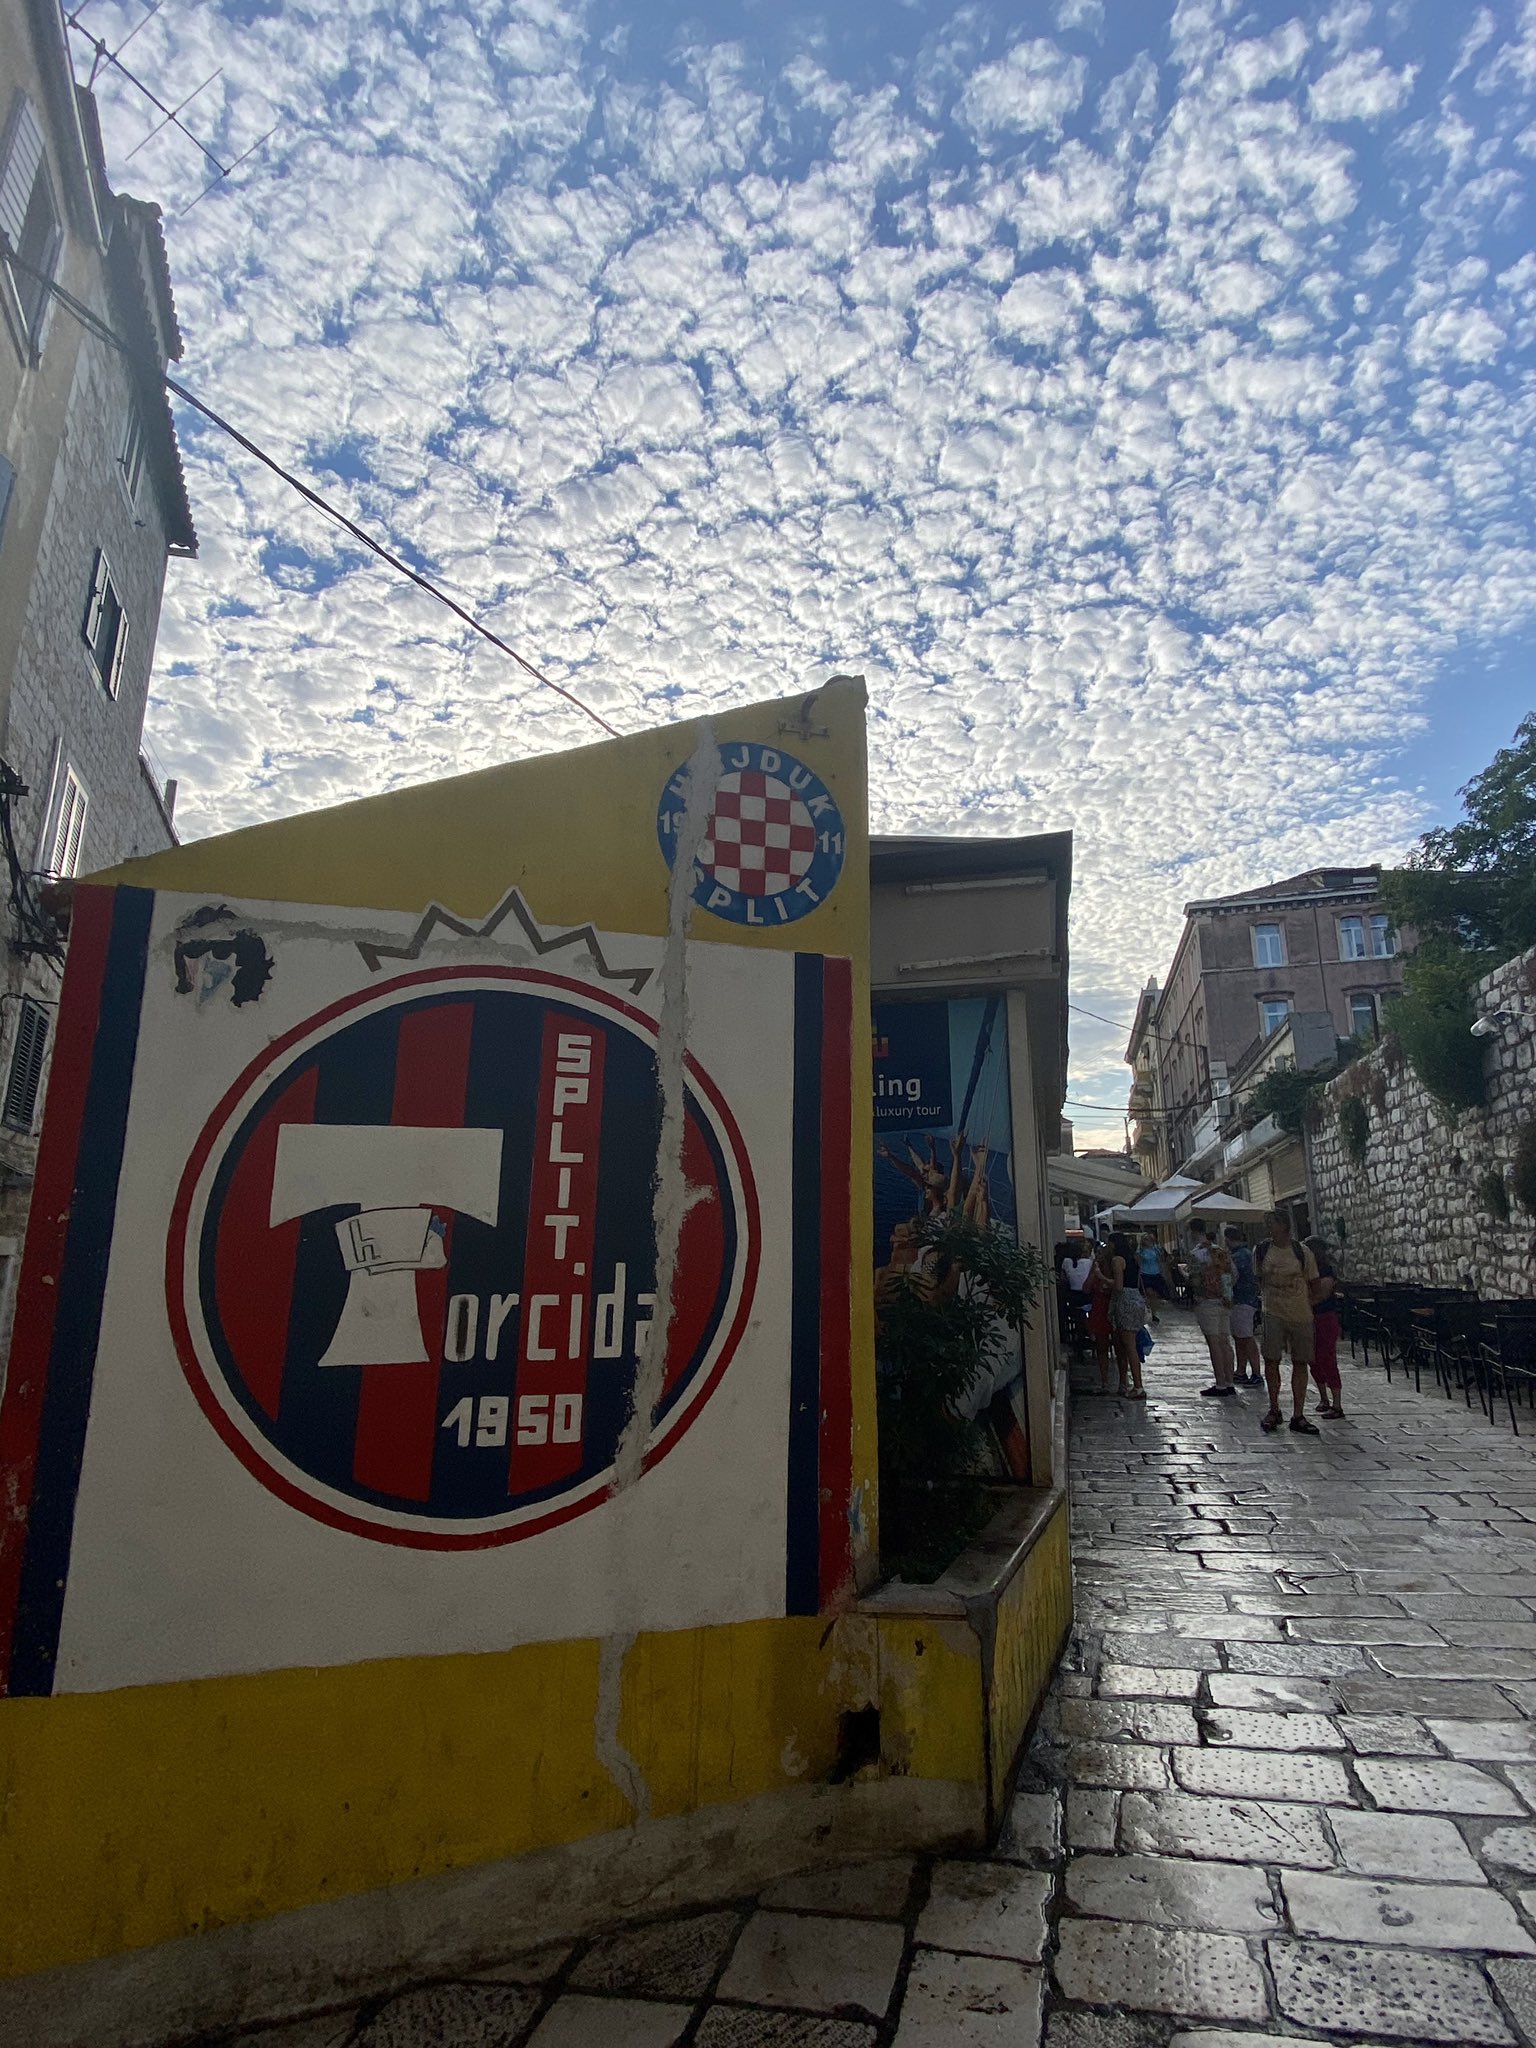 Picture displayed in the Fan Shop in Split, Hajduk Split su…